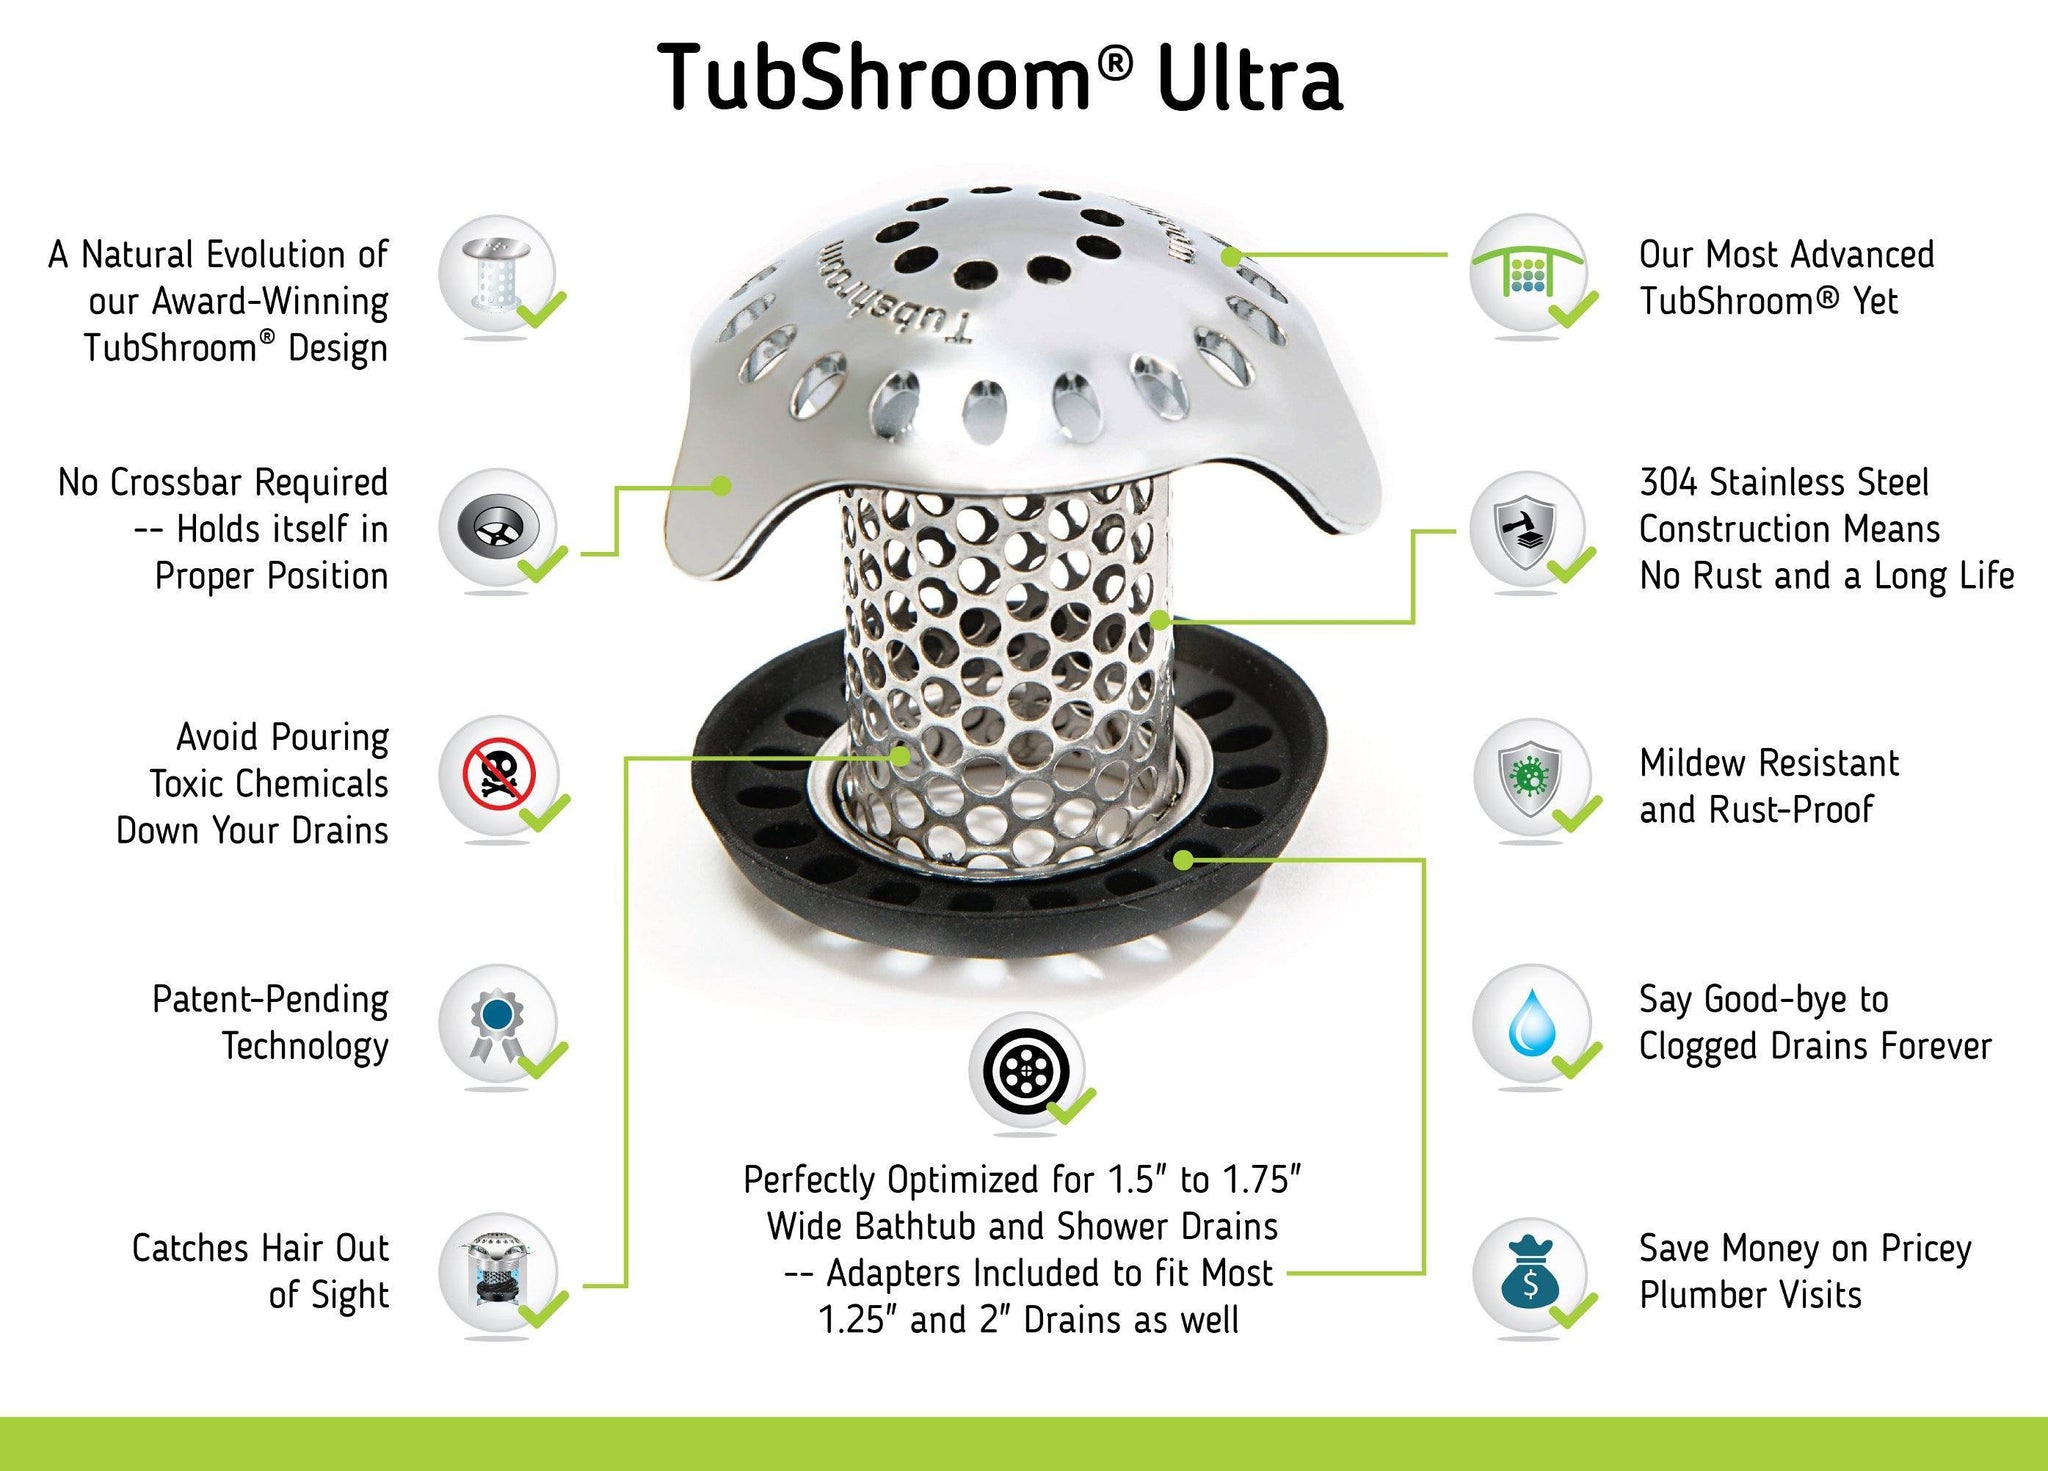 TubShroom®, SinkShroom® Strainers & StopShroom® Plug Bundle